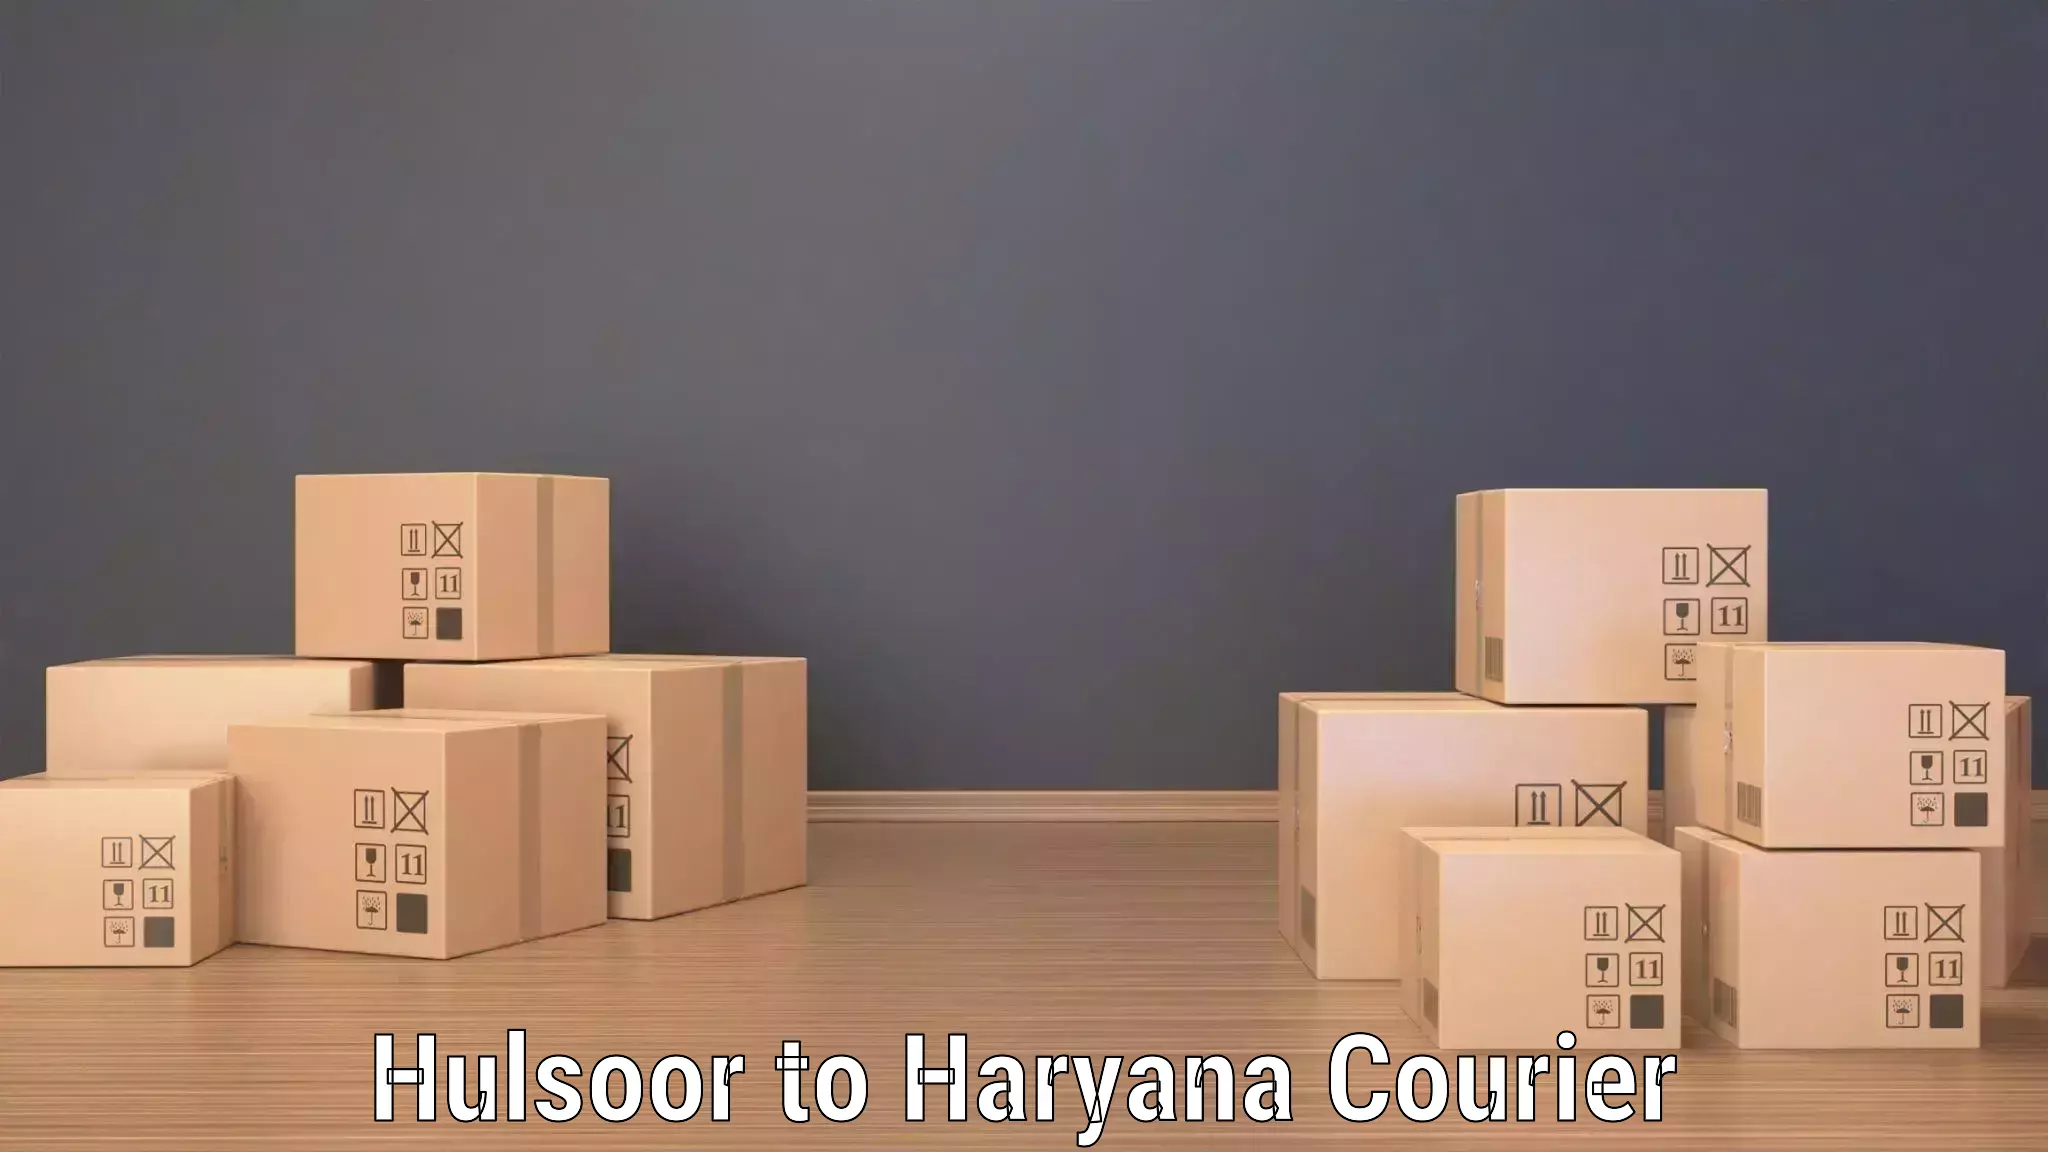 Custom courier strategies in Hulsoor to NCR Haryana